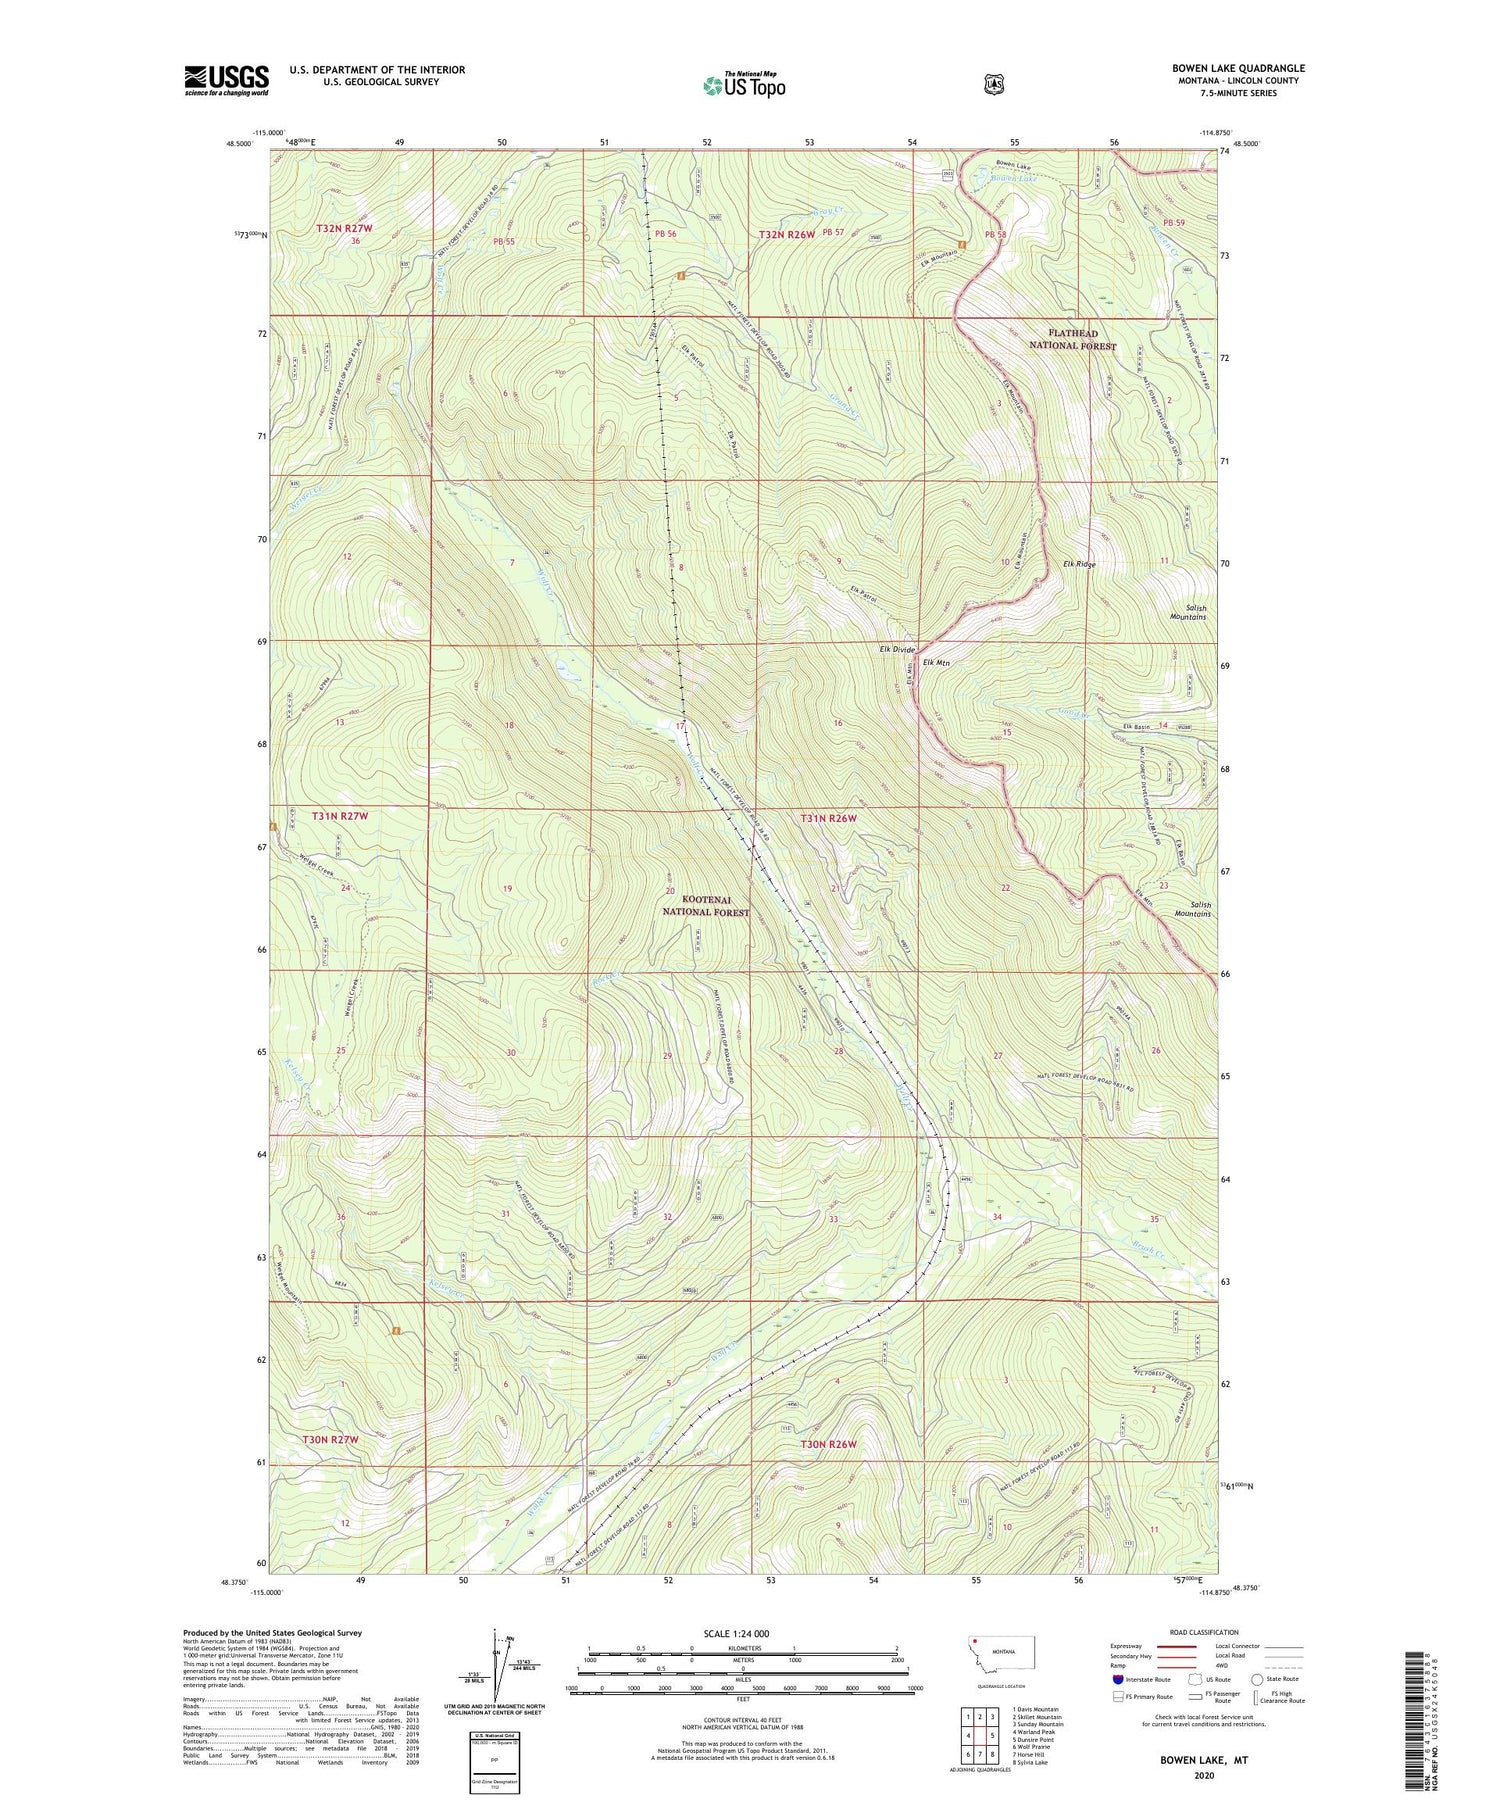 Bowen Lake Montana US Topo Map Image